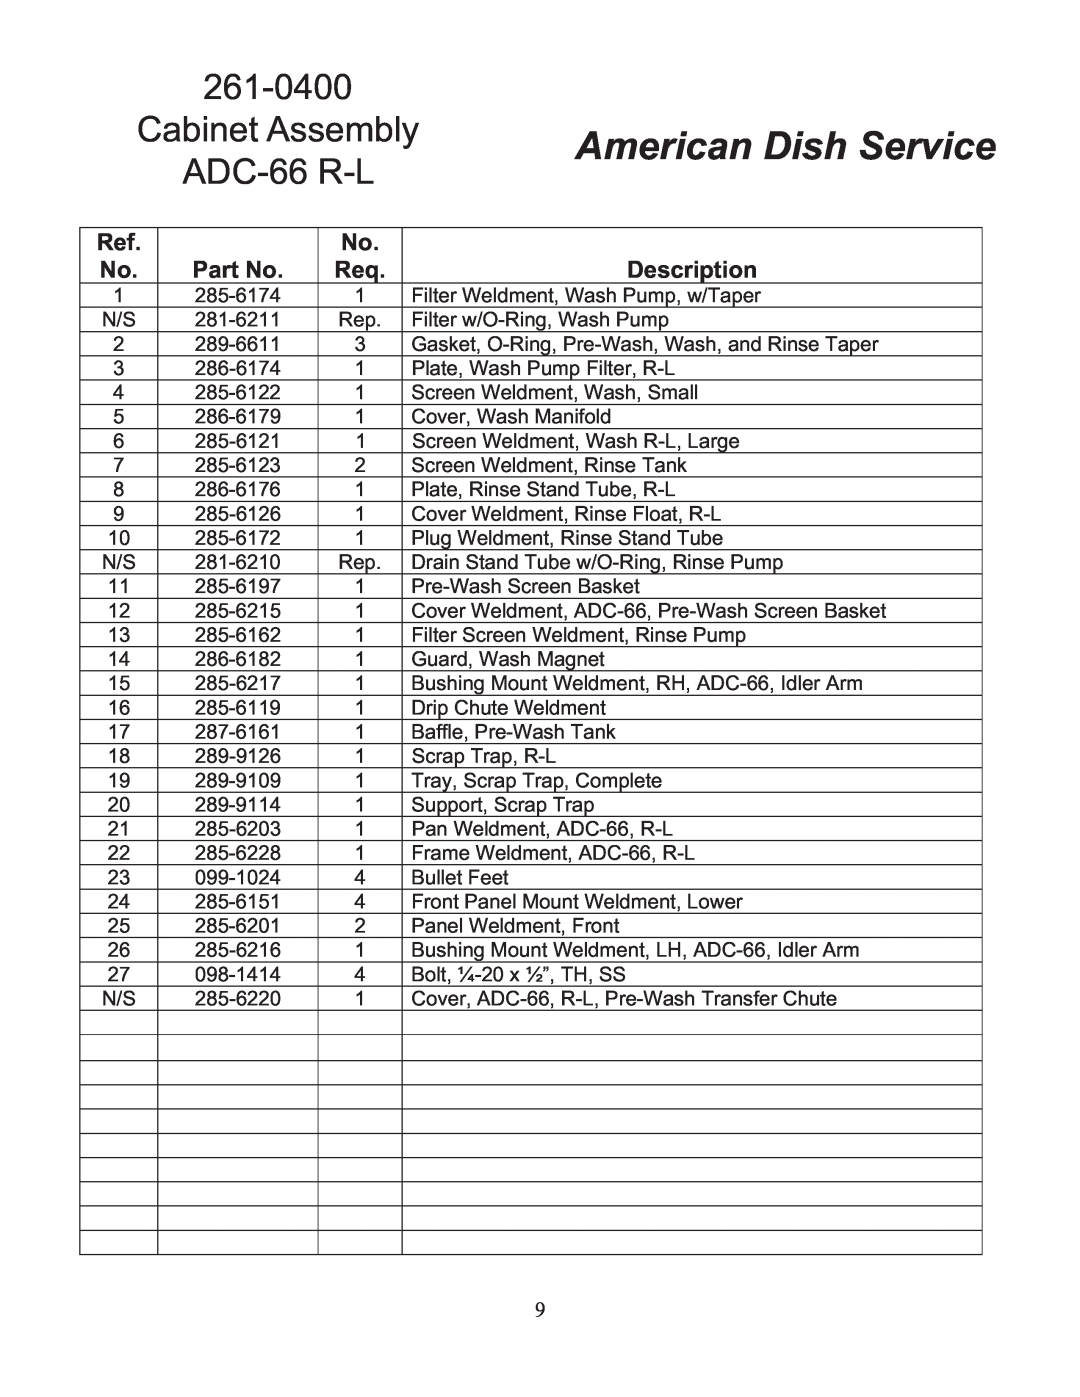 American Dish Service ADC-66 L-R/R-L manual Cabinet Assembly ADC-66 R-L, American Dish Service, Part No, Description 